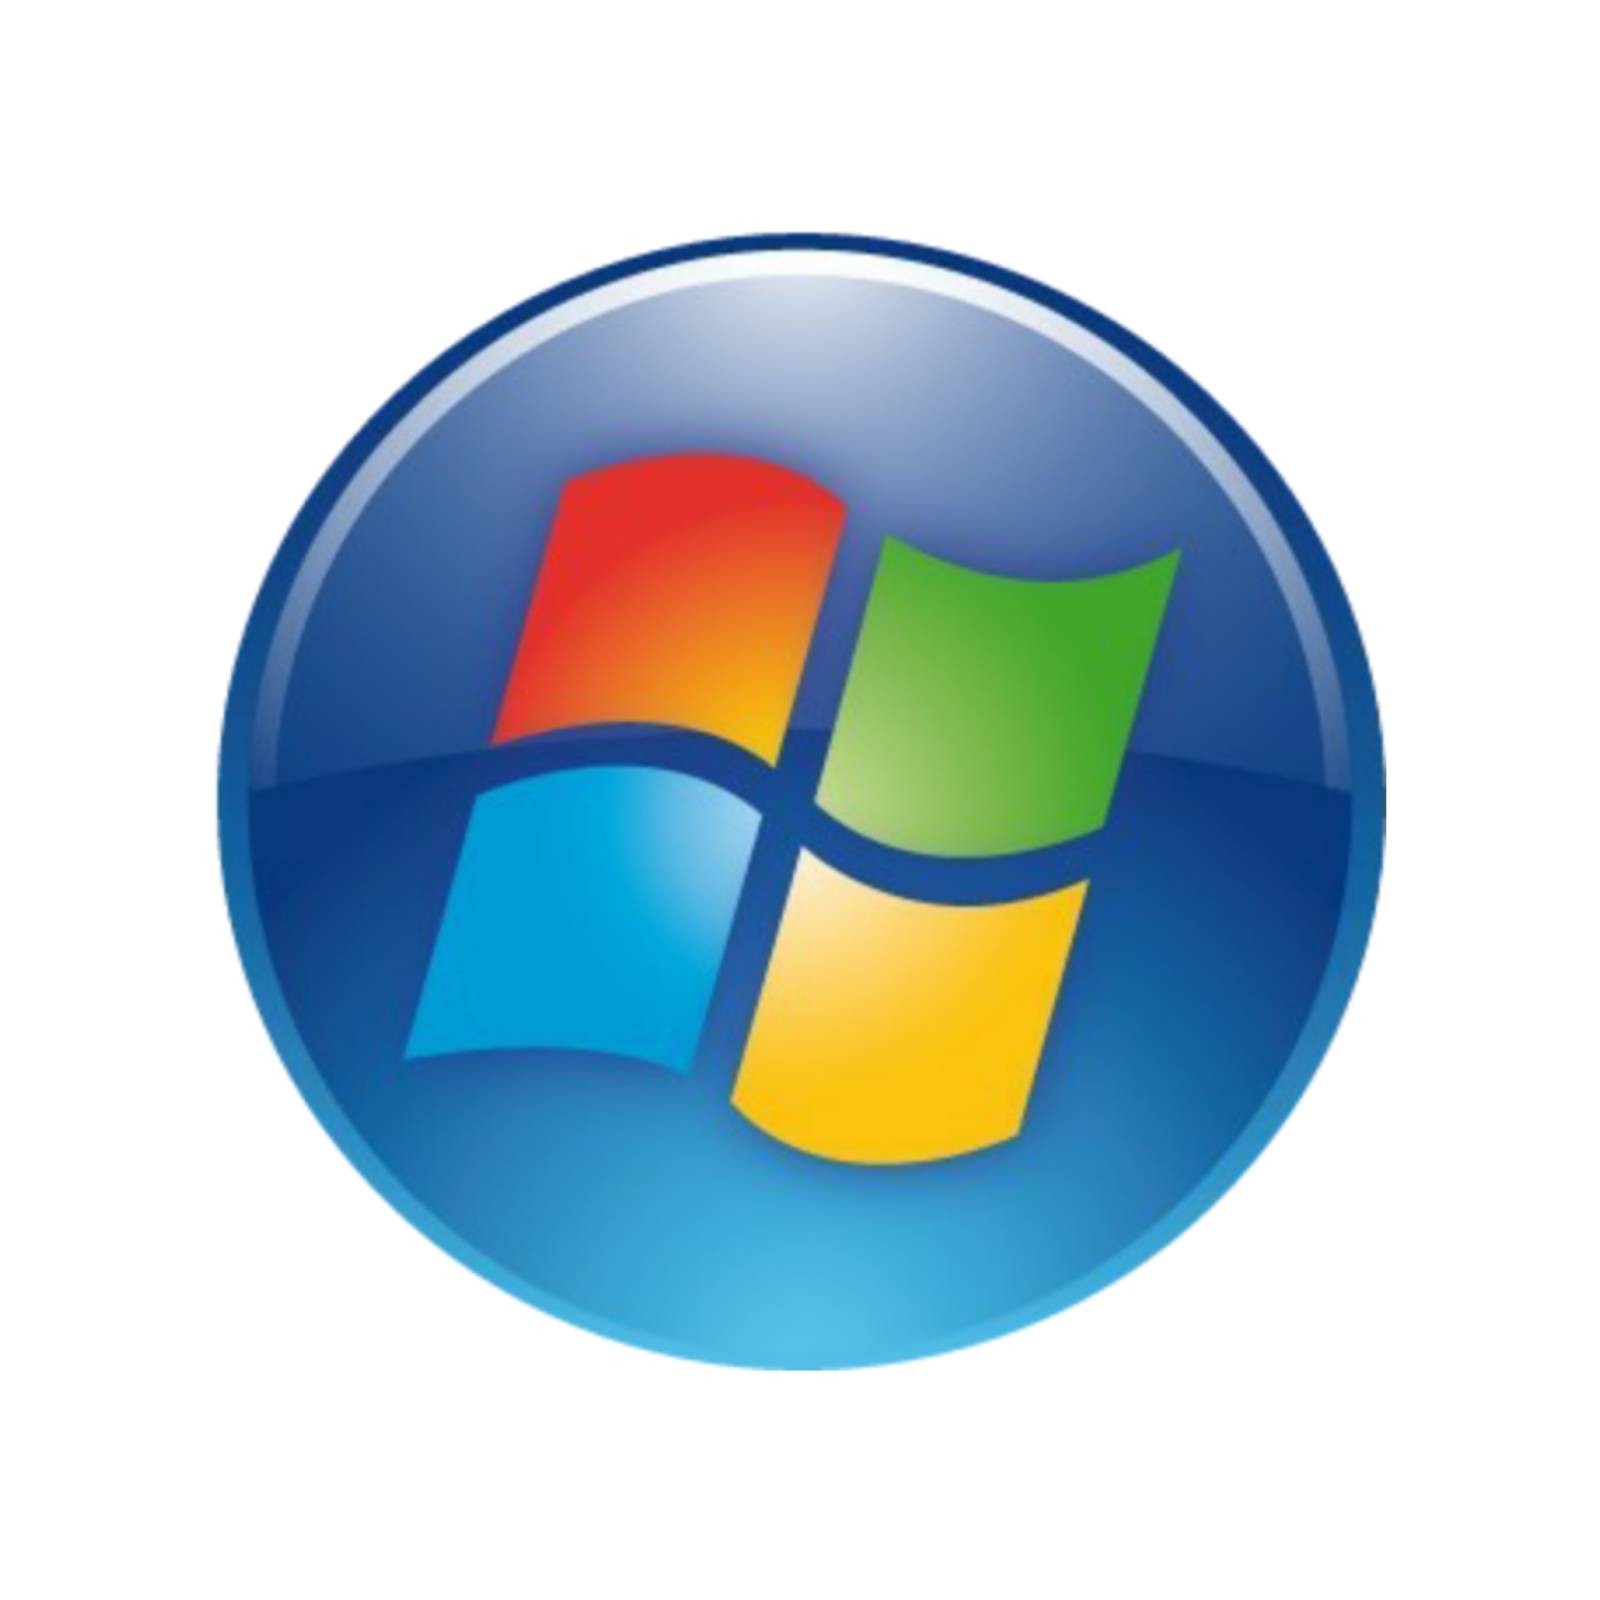 Кнопка пуск виндовс 7. Меню пуск виндовс 7. Значок Windows 7. Значок пуск.